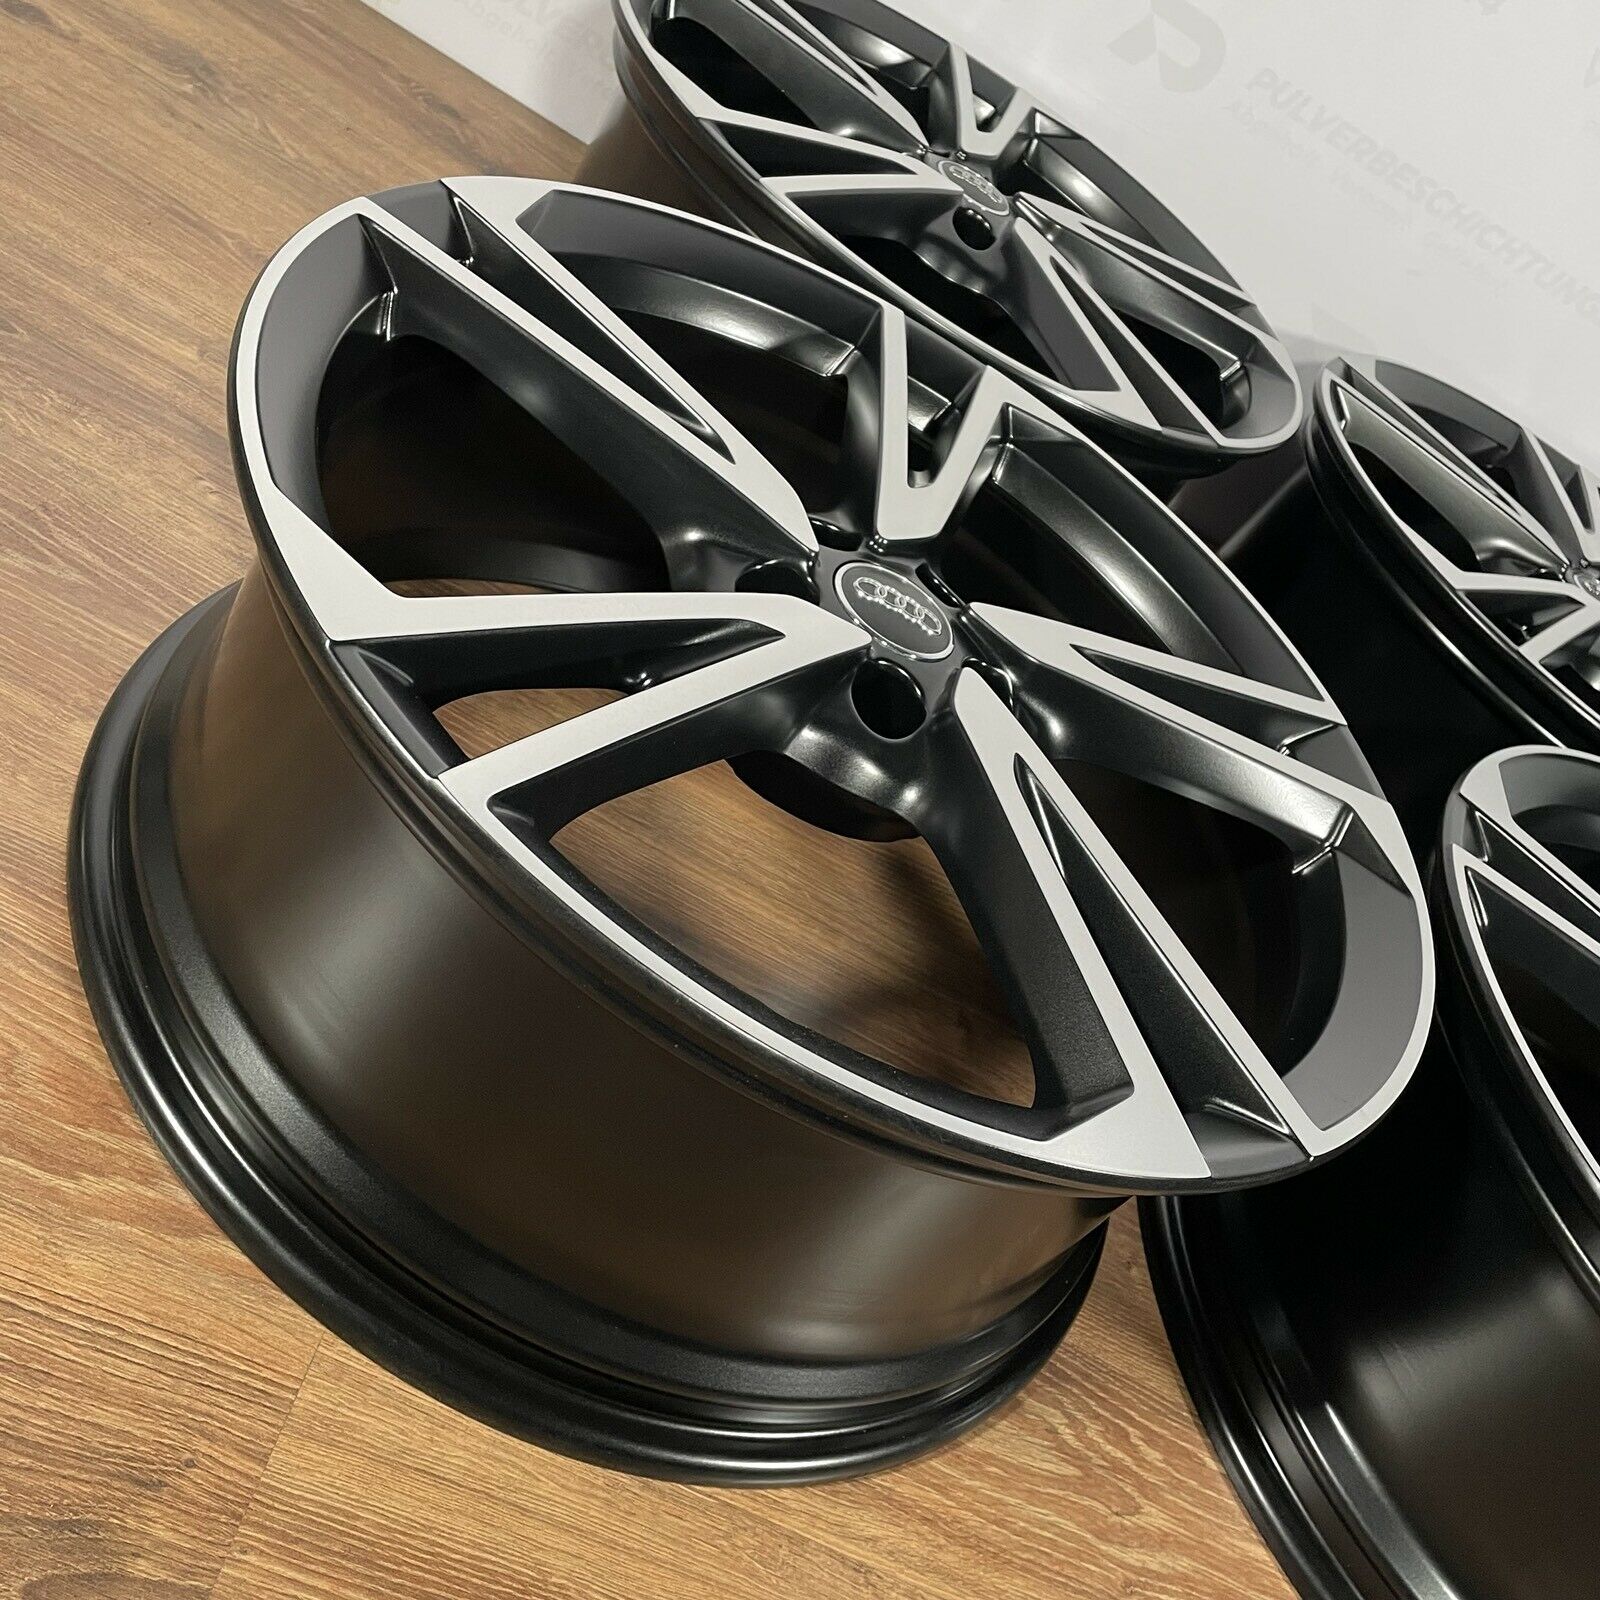 Originale 20 Zoll Audi Q5 FY S-Line Falx Alufelgen Leichtmetallfelgen Felgen schwarz (weitere Farben möglich)